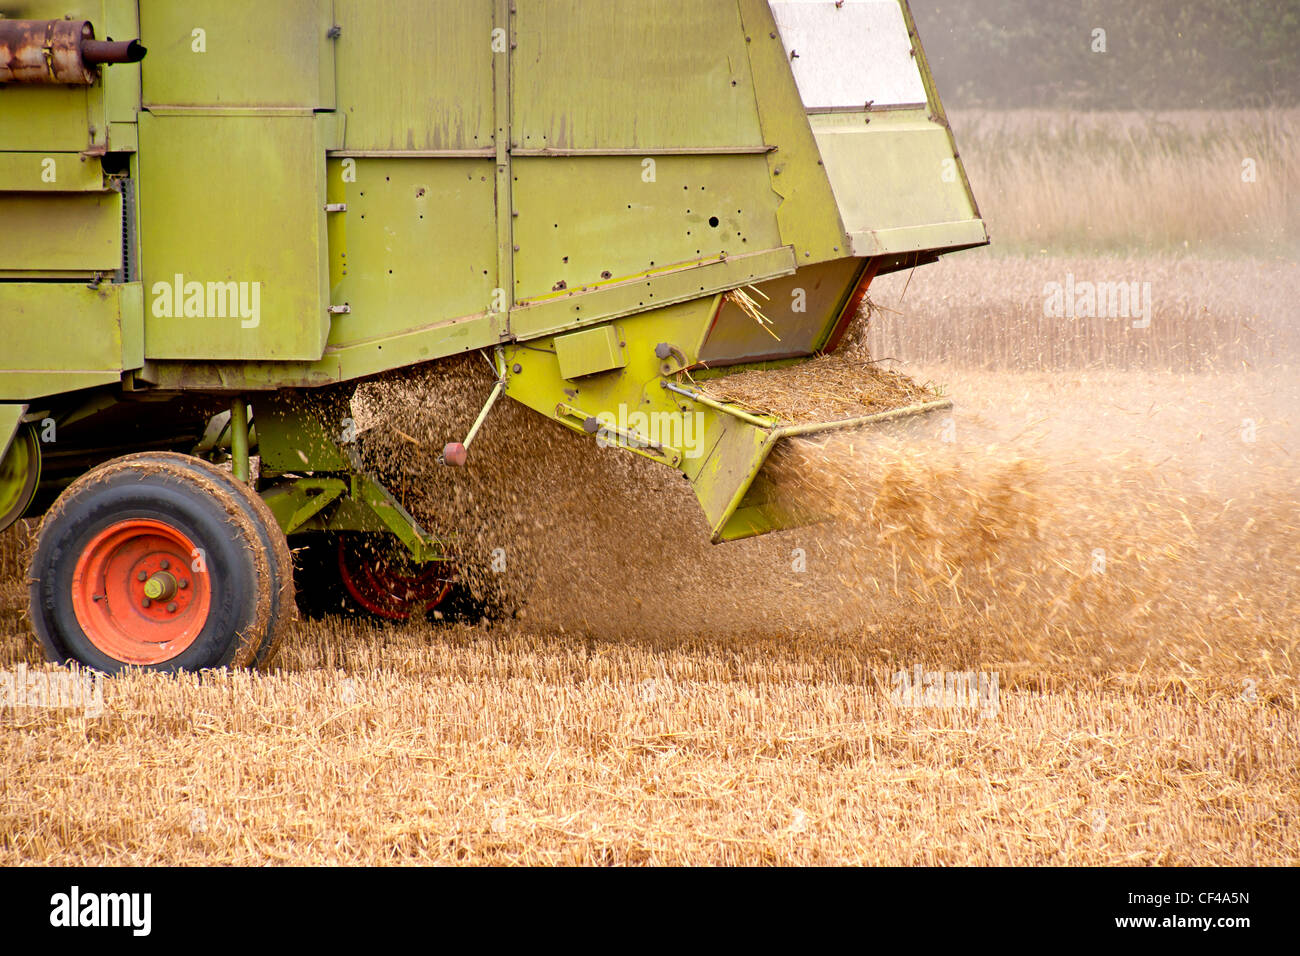 Une moissonneuse-batteuse éjecte la balle après la récolte des grains de blé. Banque D'Images